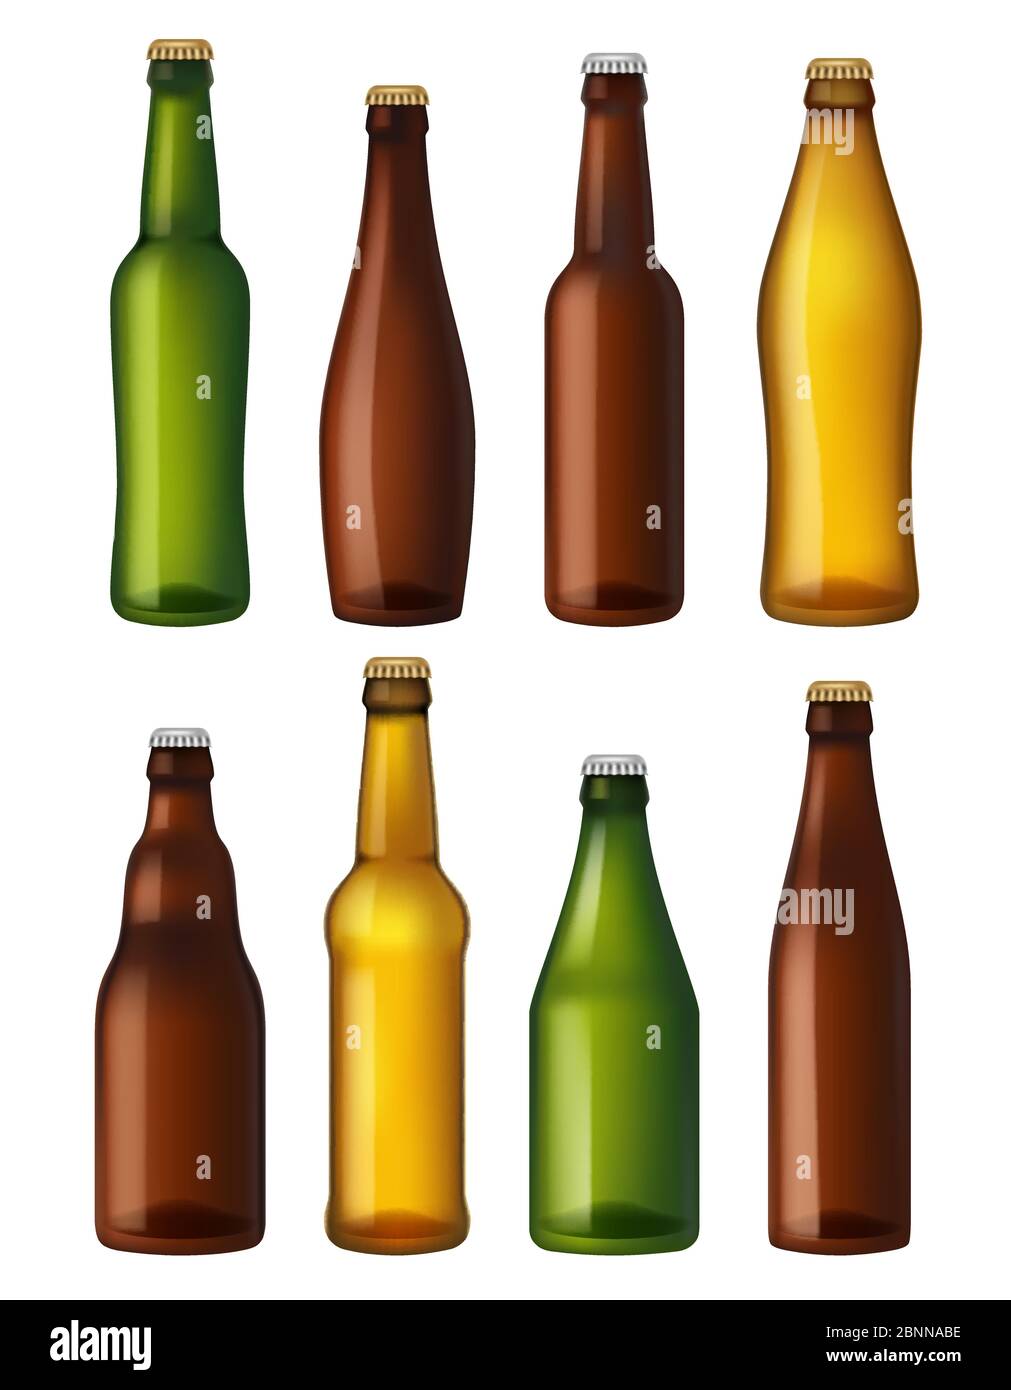 Bottiglie di birra vuote. Contenitori in vetro colorato, recipienti per artigianato marrone e leggero e birra verde. Illustrazioni vettoriali realistiche flaconi Illustrazione Vettoriale